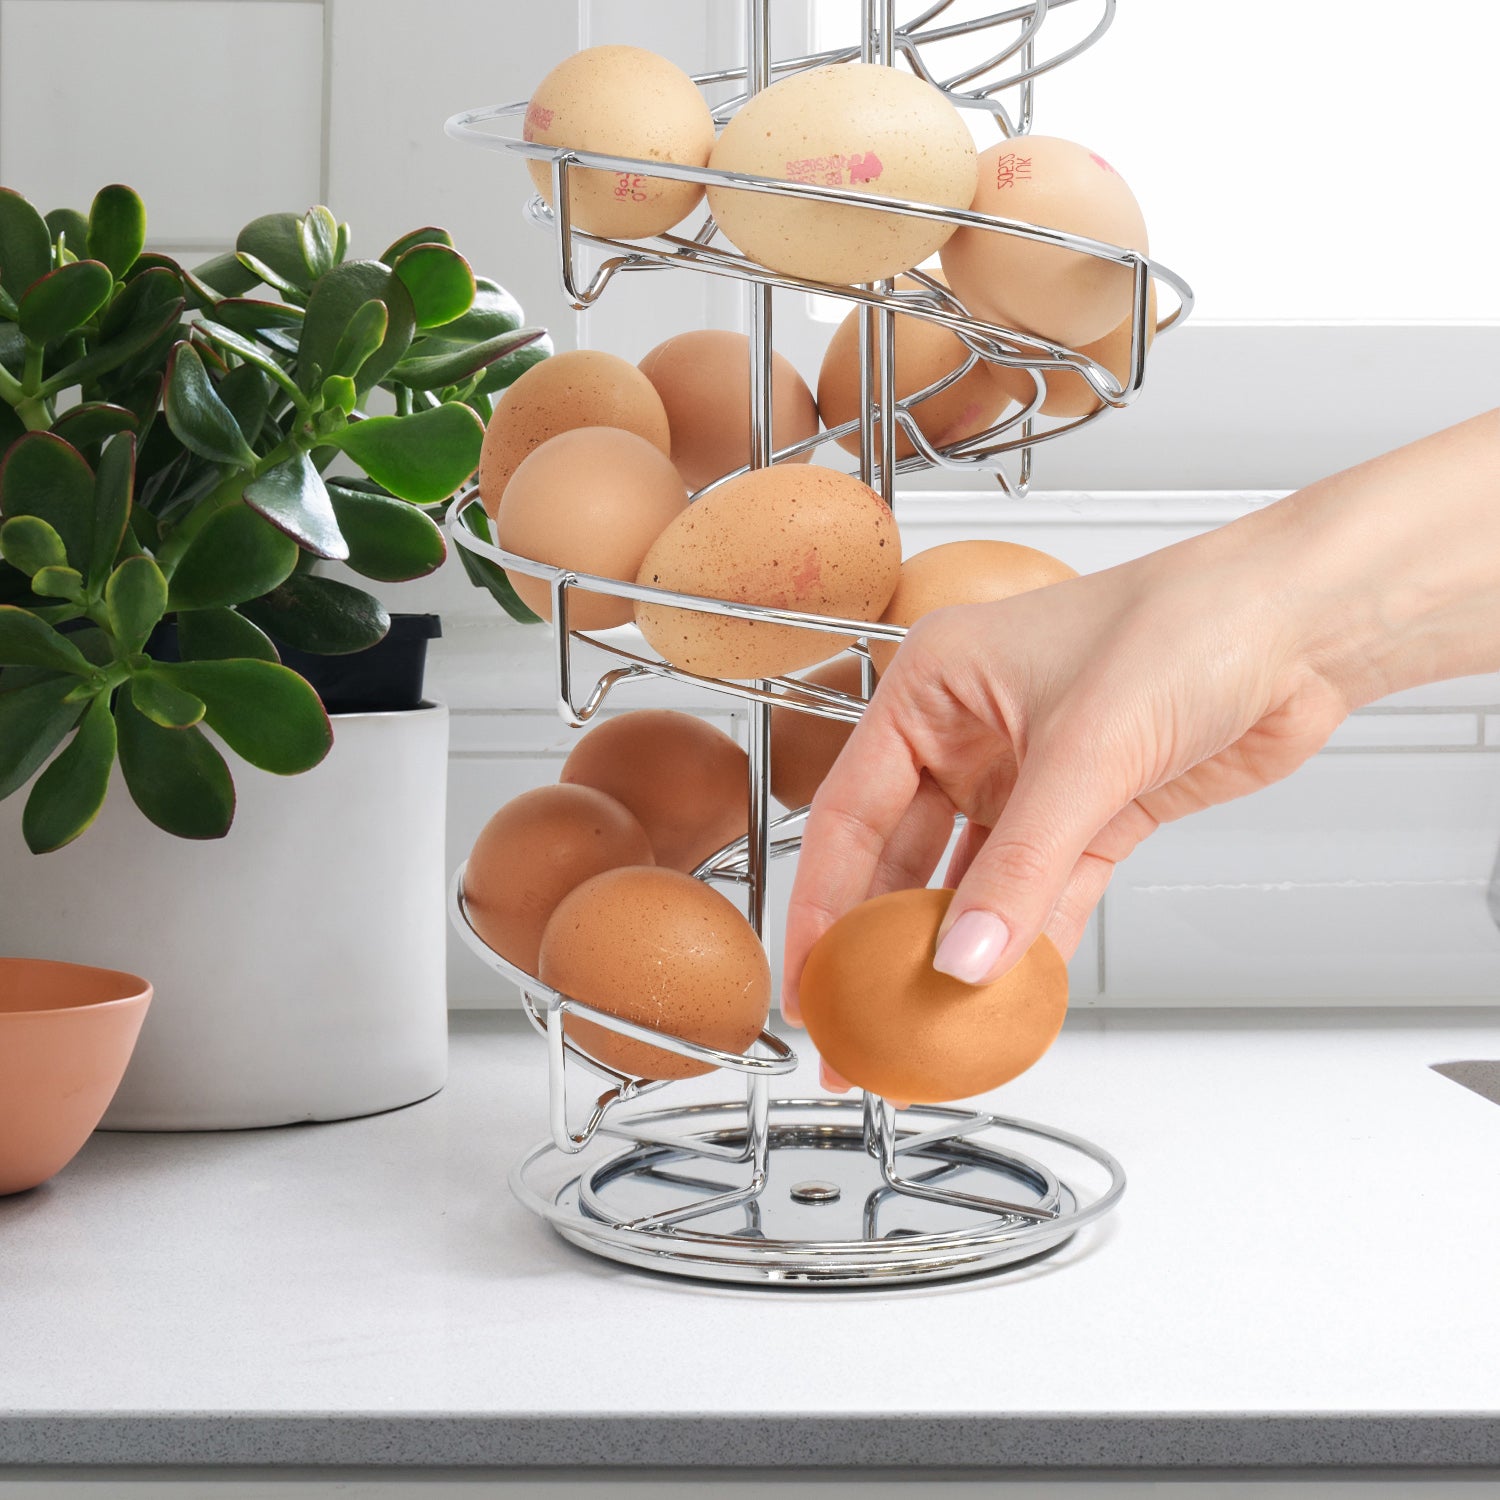 The Egg Skelter: Helter skelter design egg holder ~ Fresh Design Blog